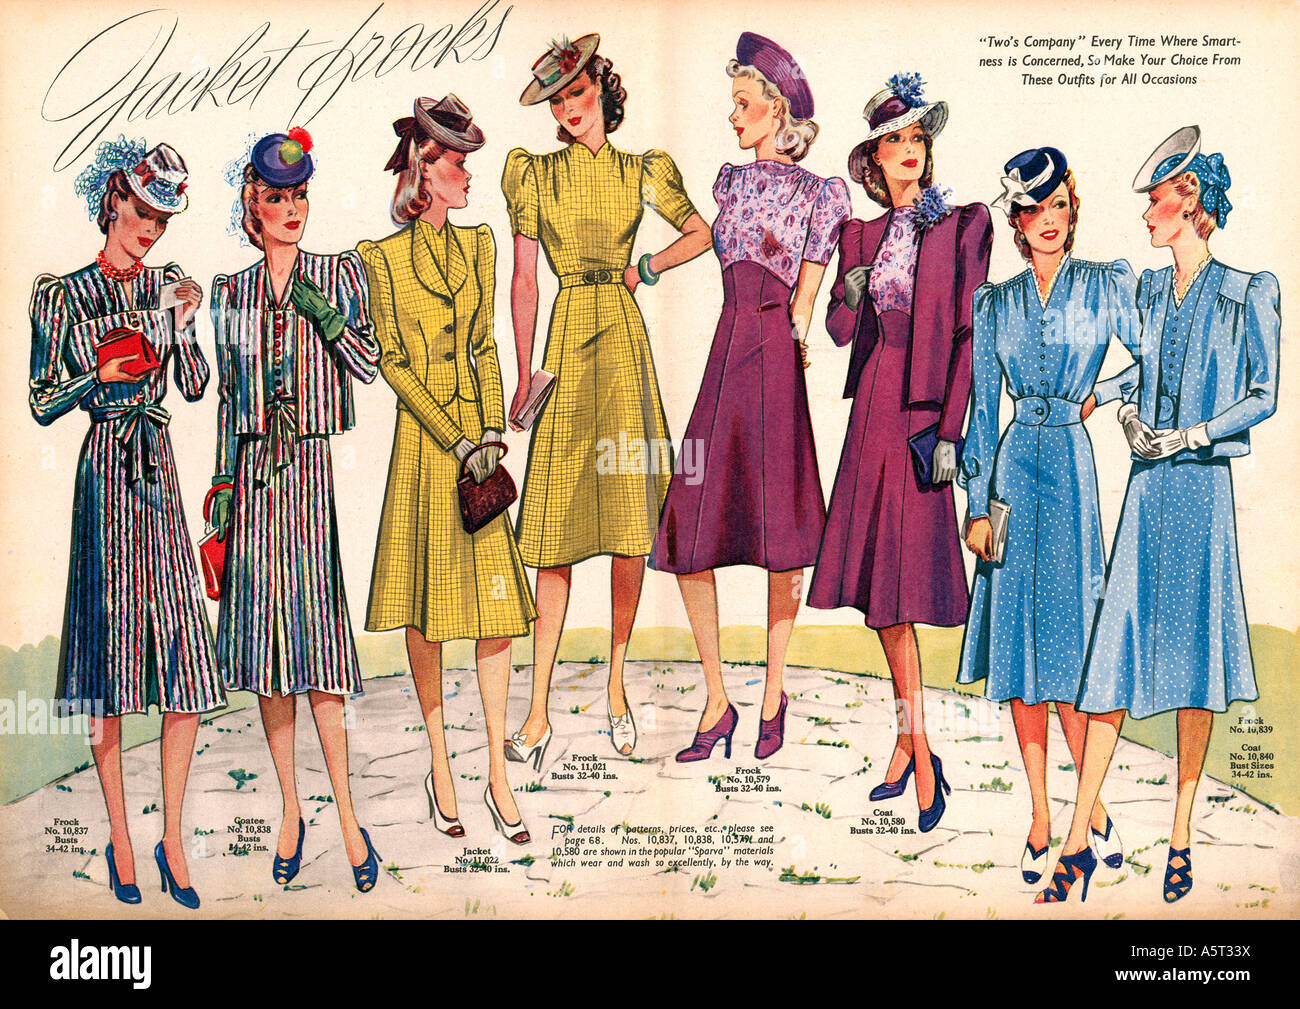 Jacke Kittel 1940 Magazin Spread auf Krieg an der Heimatfront als die Damen  chic aussehen Stockfotografie - Alamy